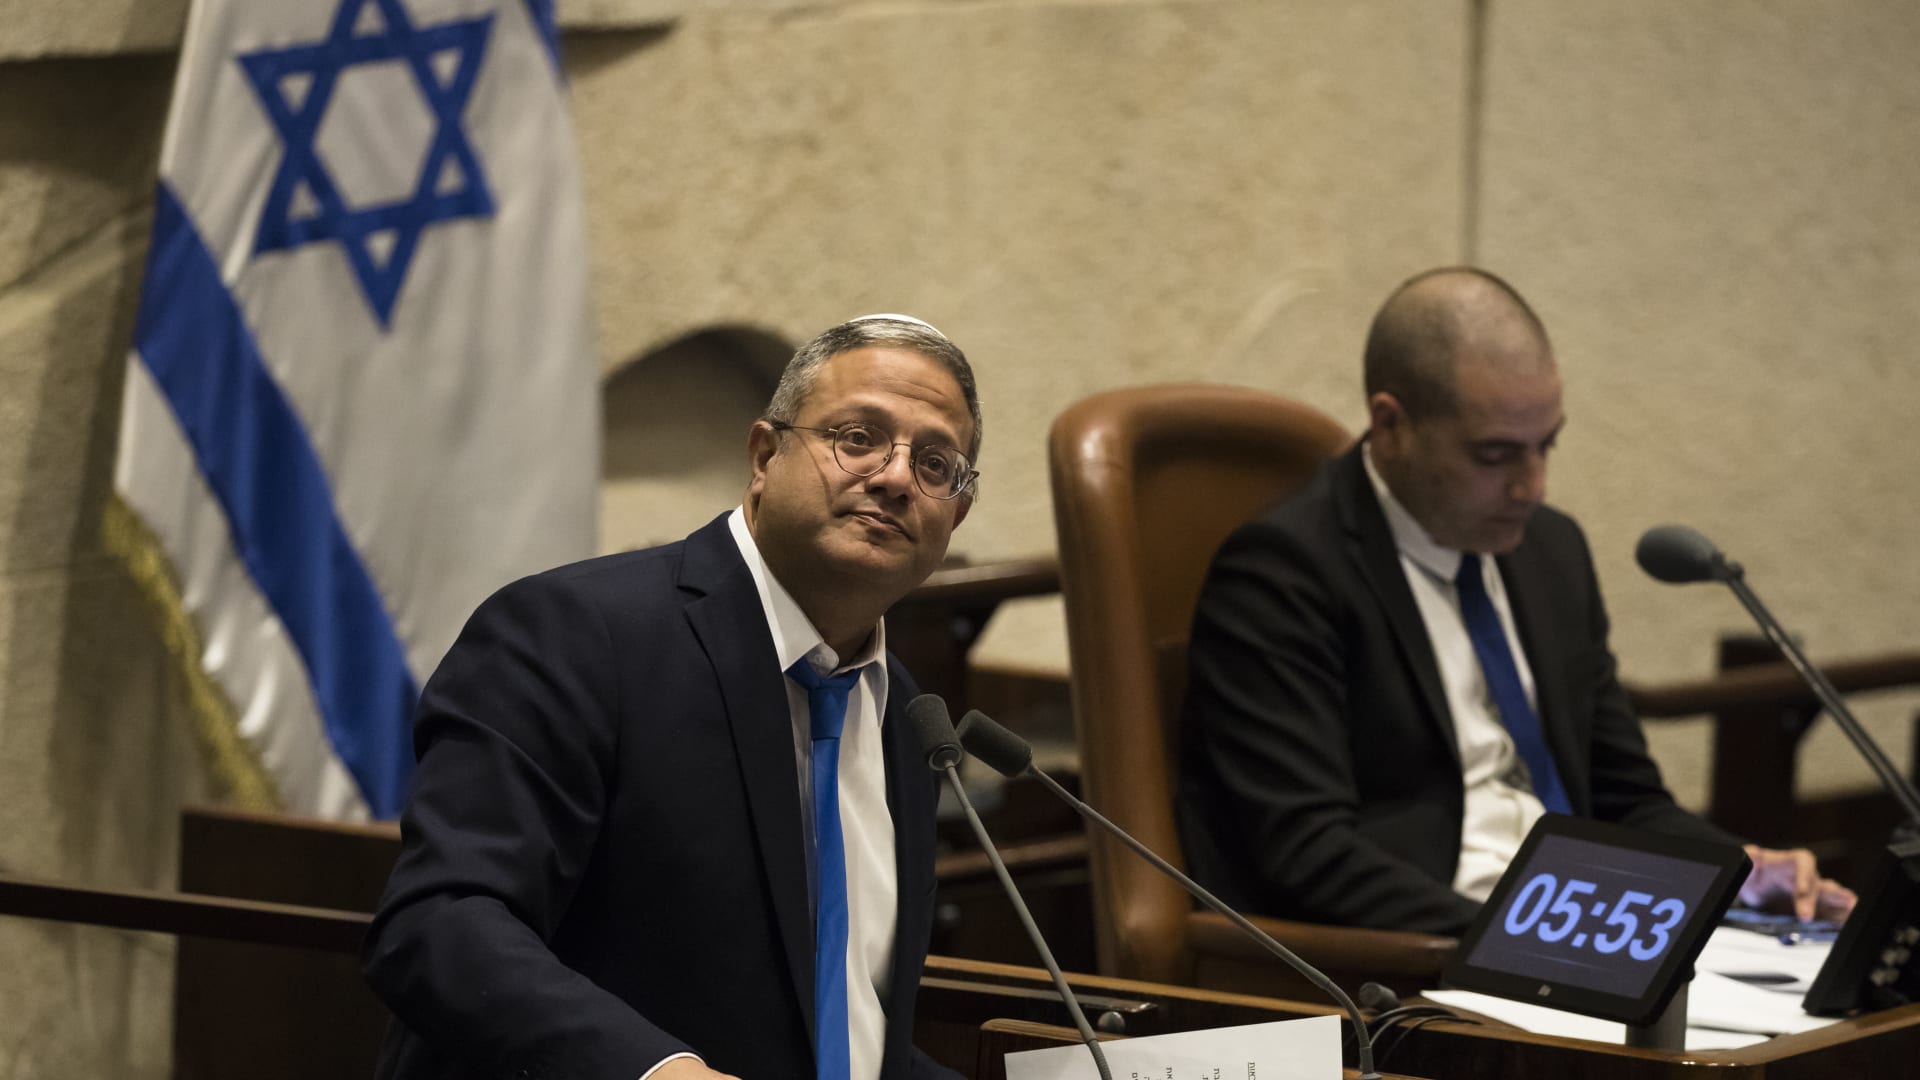 وزراء في حكومة نتنياهو يرفضون تدخل بايدن: إسرائيل "ليست نجمة أخرى على العلم الأمريكي"